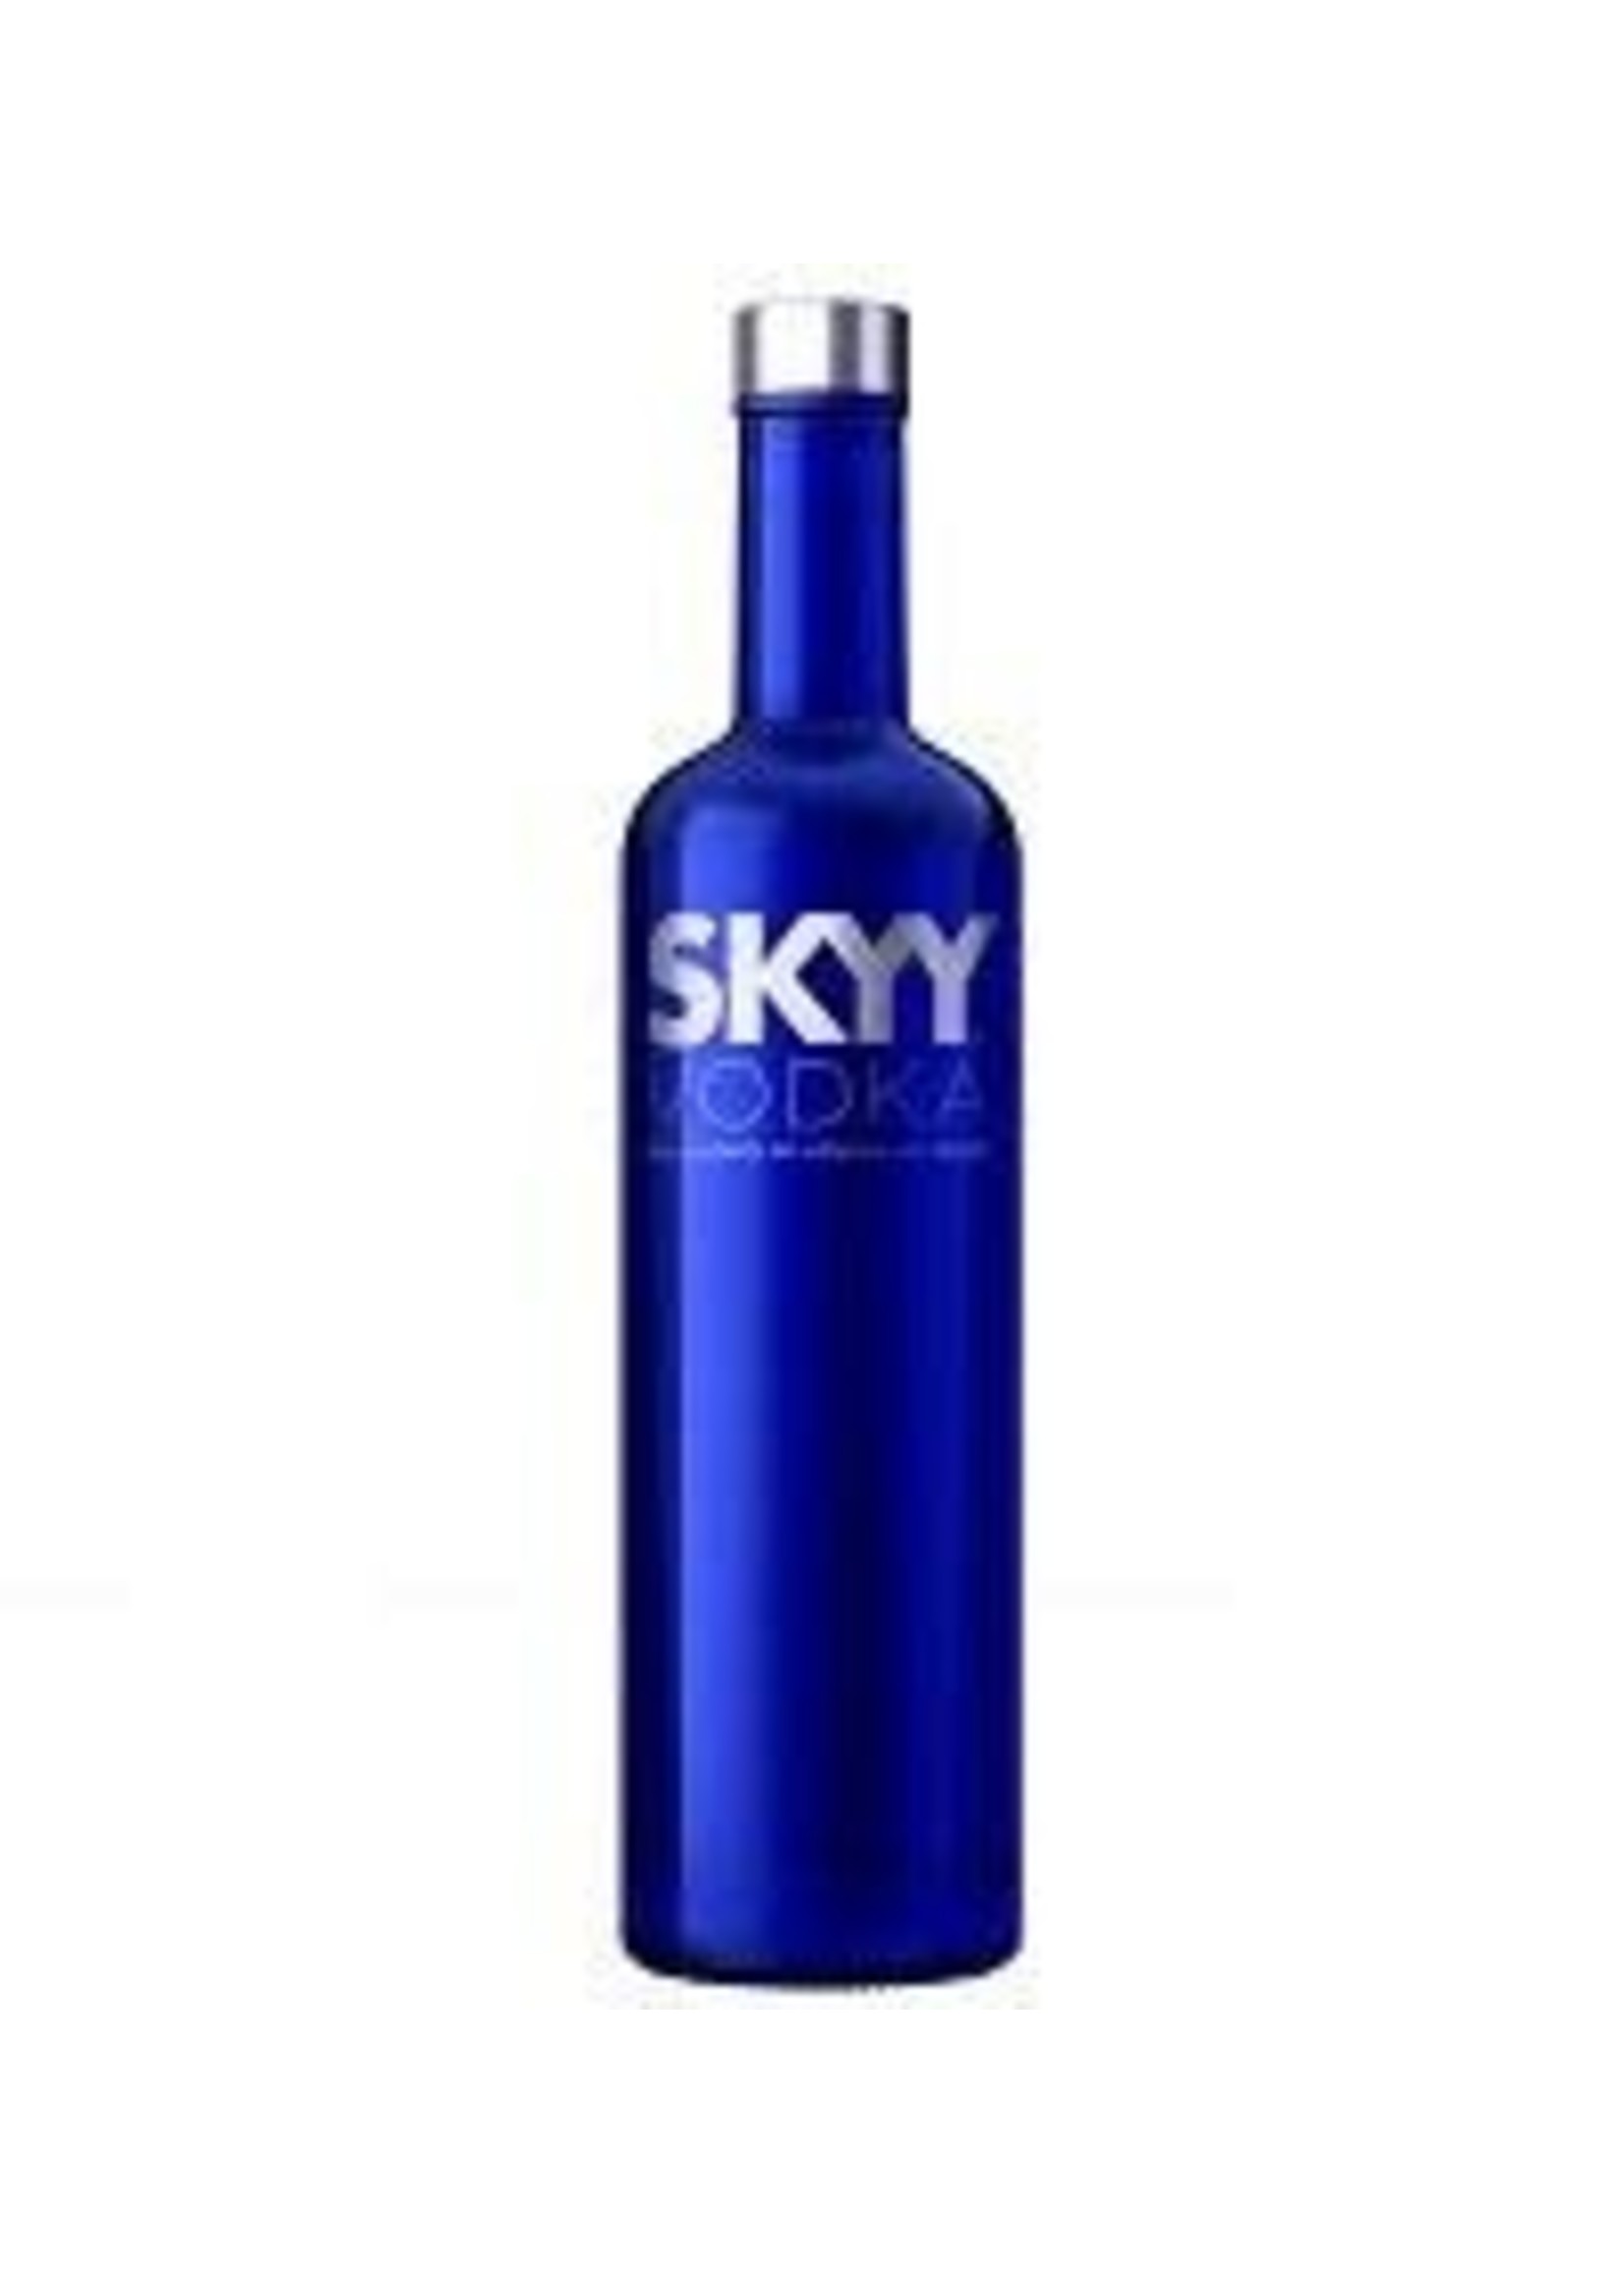 Skyy Skyy / Vodka